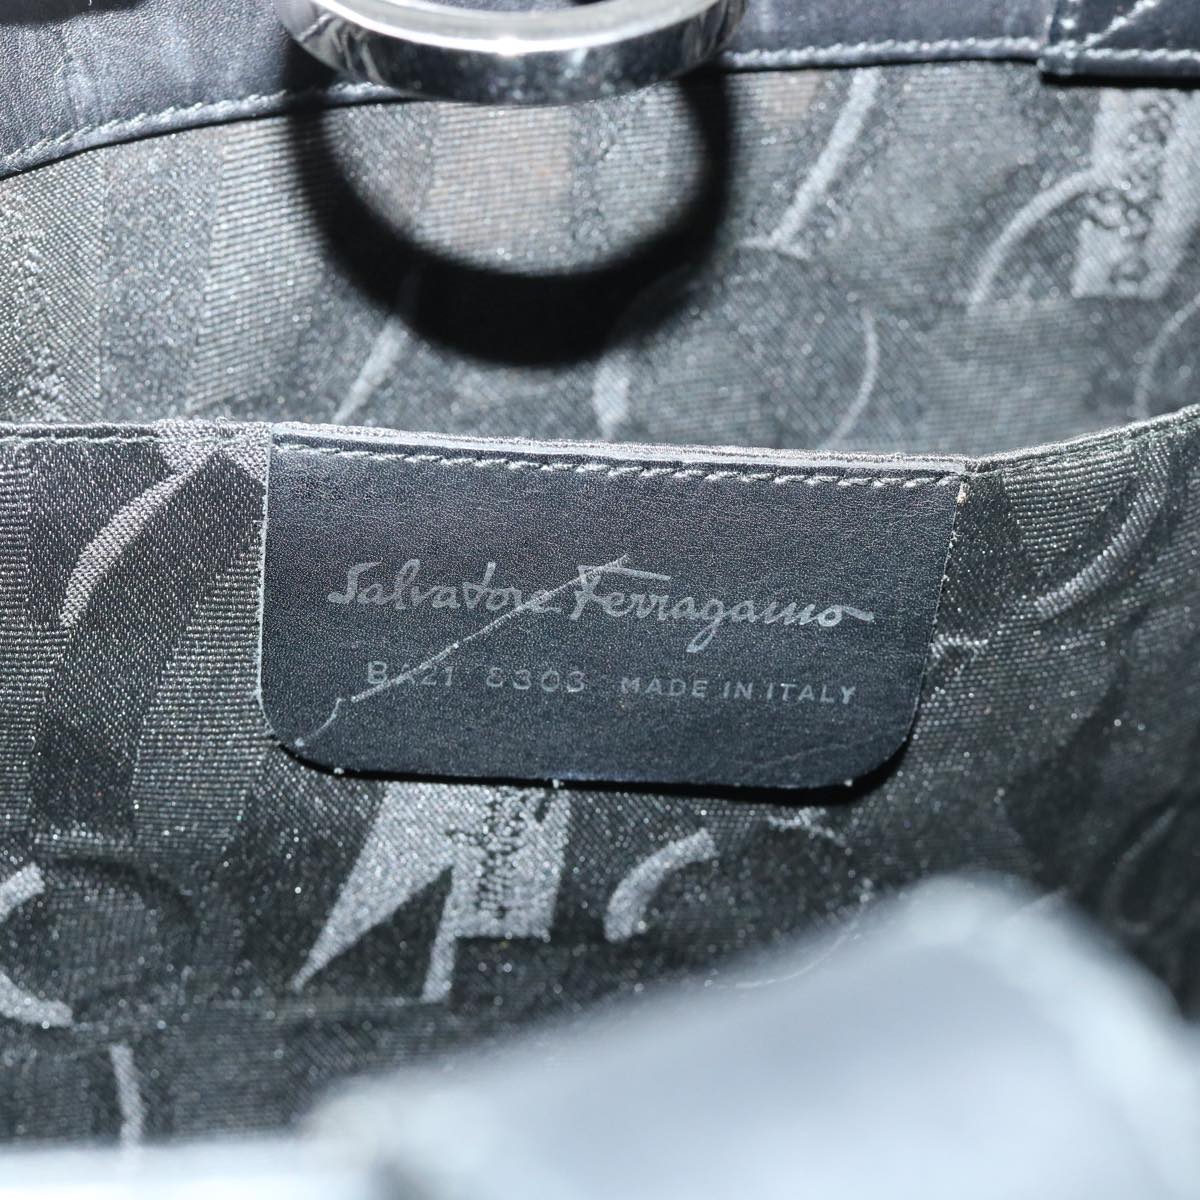 Salvatore Ferragamo Gancini Tote Bag Leather Black Auth ar10067